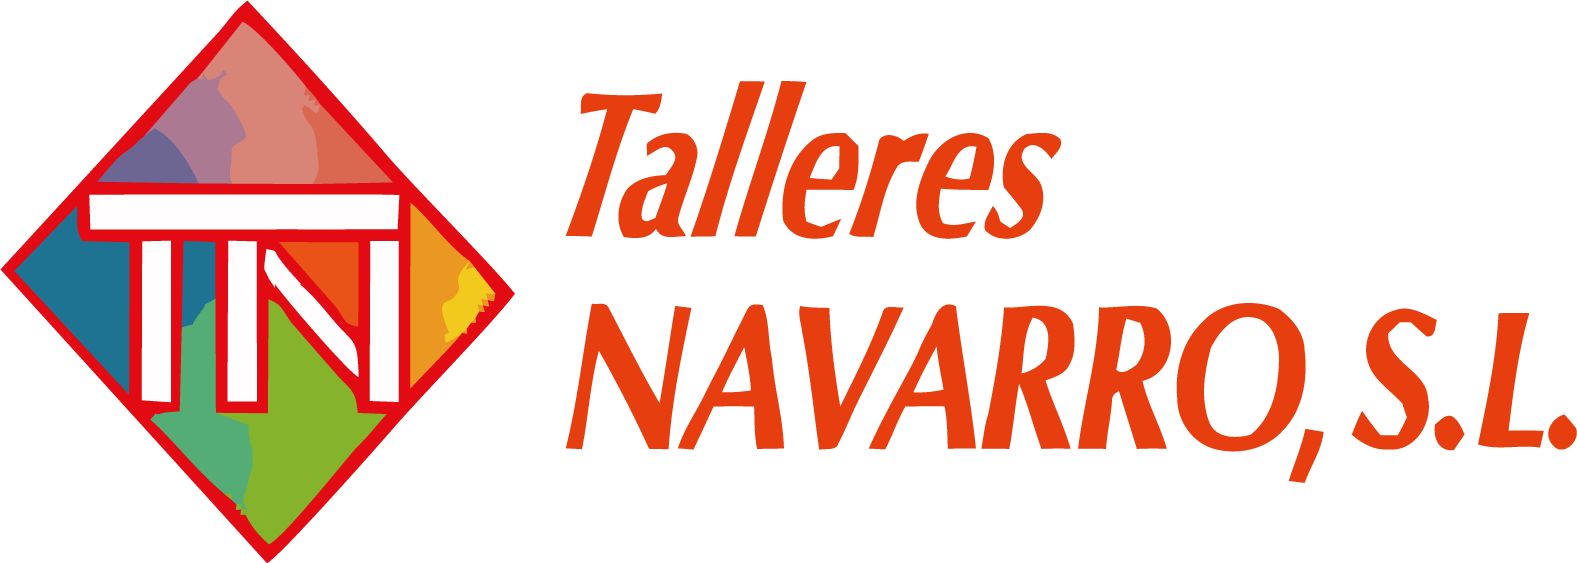 TALLERES NAVARRO.png